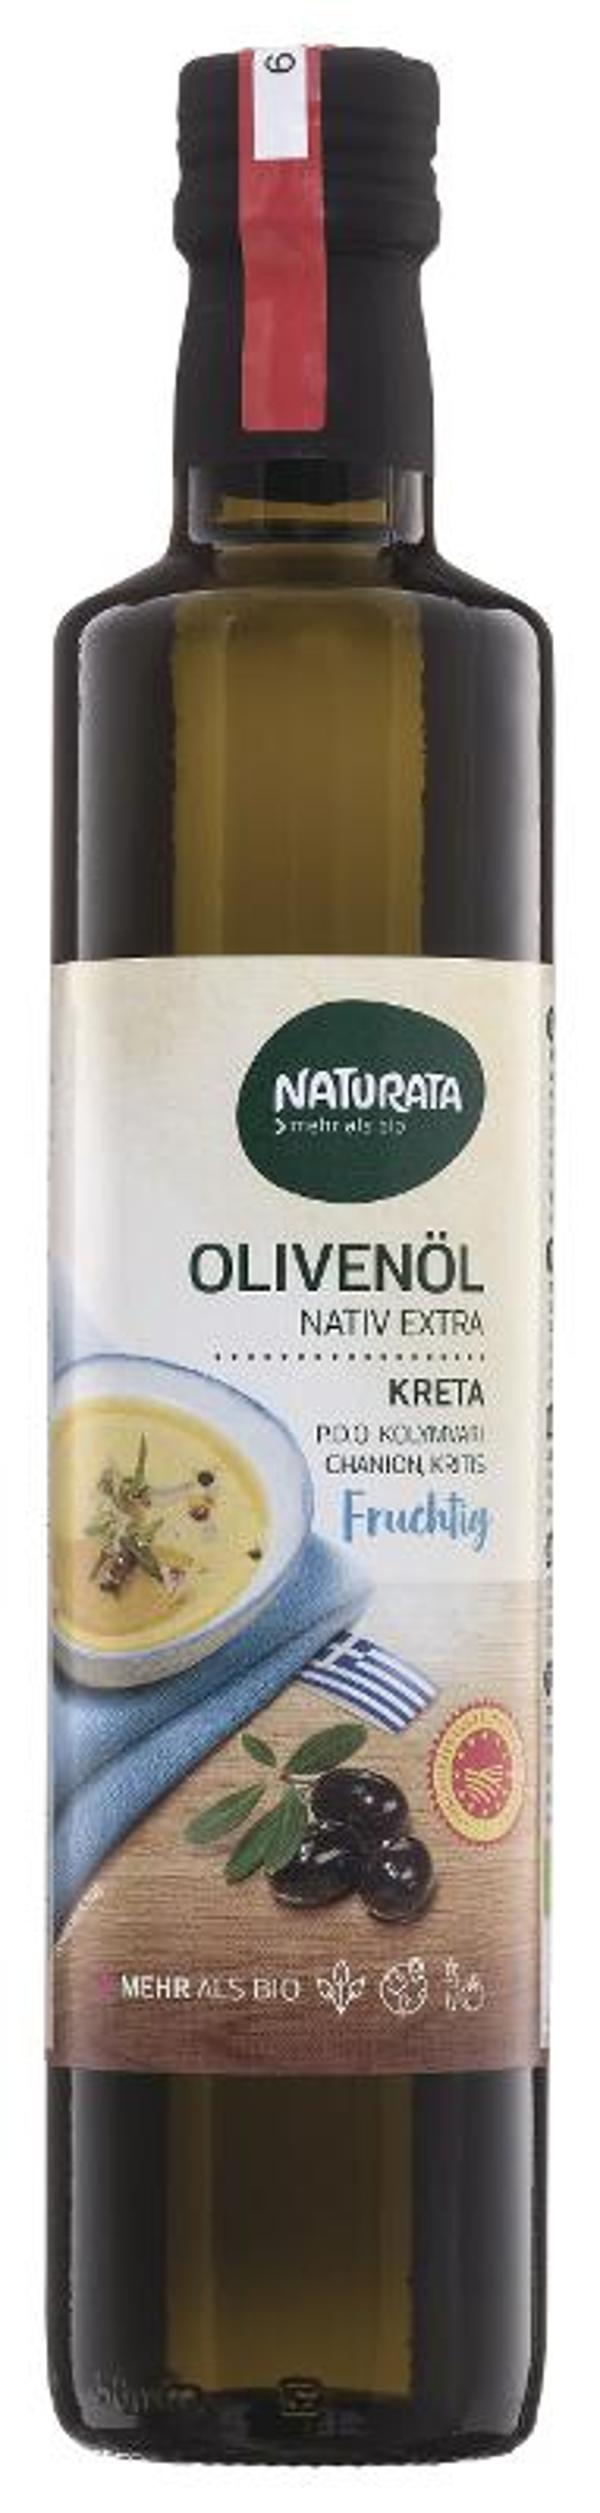 Produktfoto zu Olivenöl Kreta nativ extra